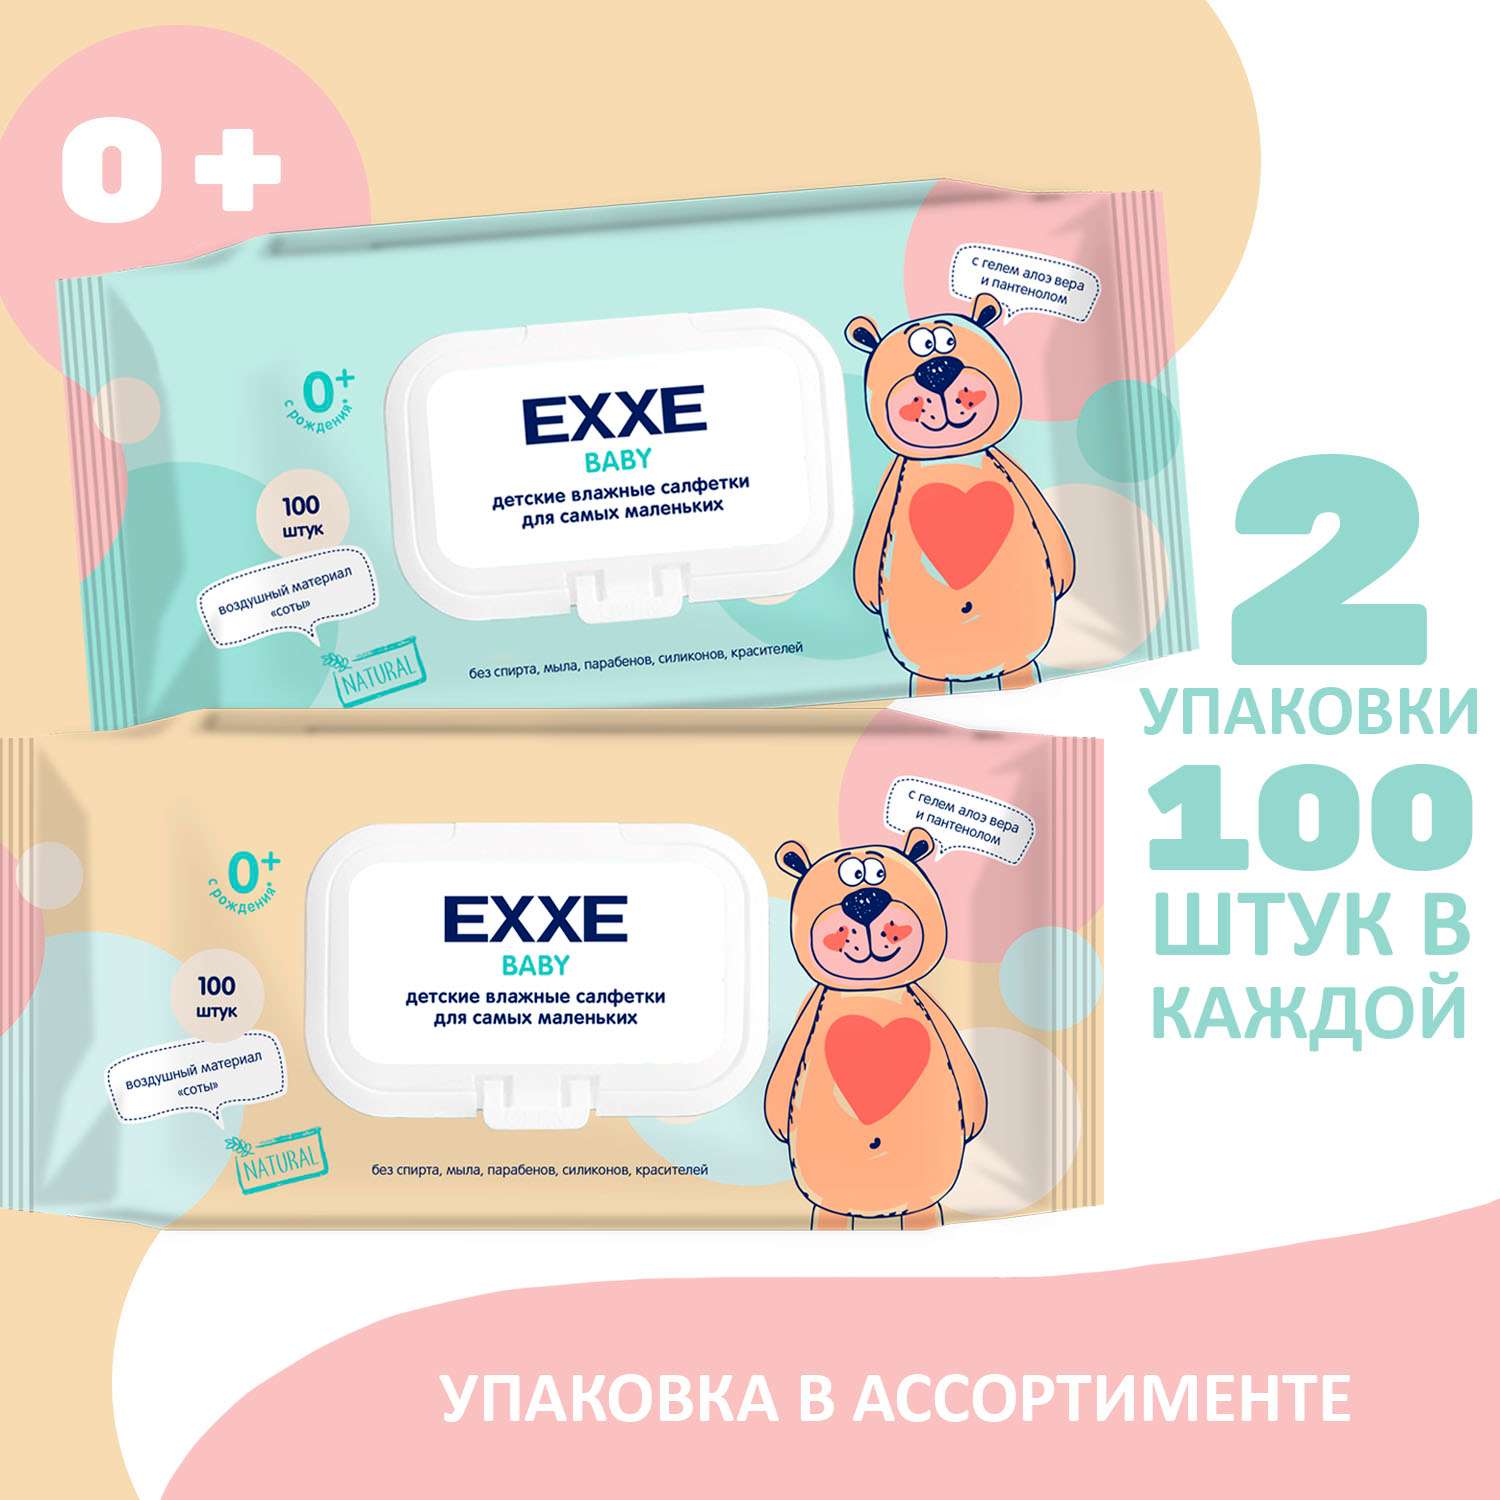 Влажные салфетки для детей EXXE Baby серия 0+ 100 штук 2 упаковки - фото 2